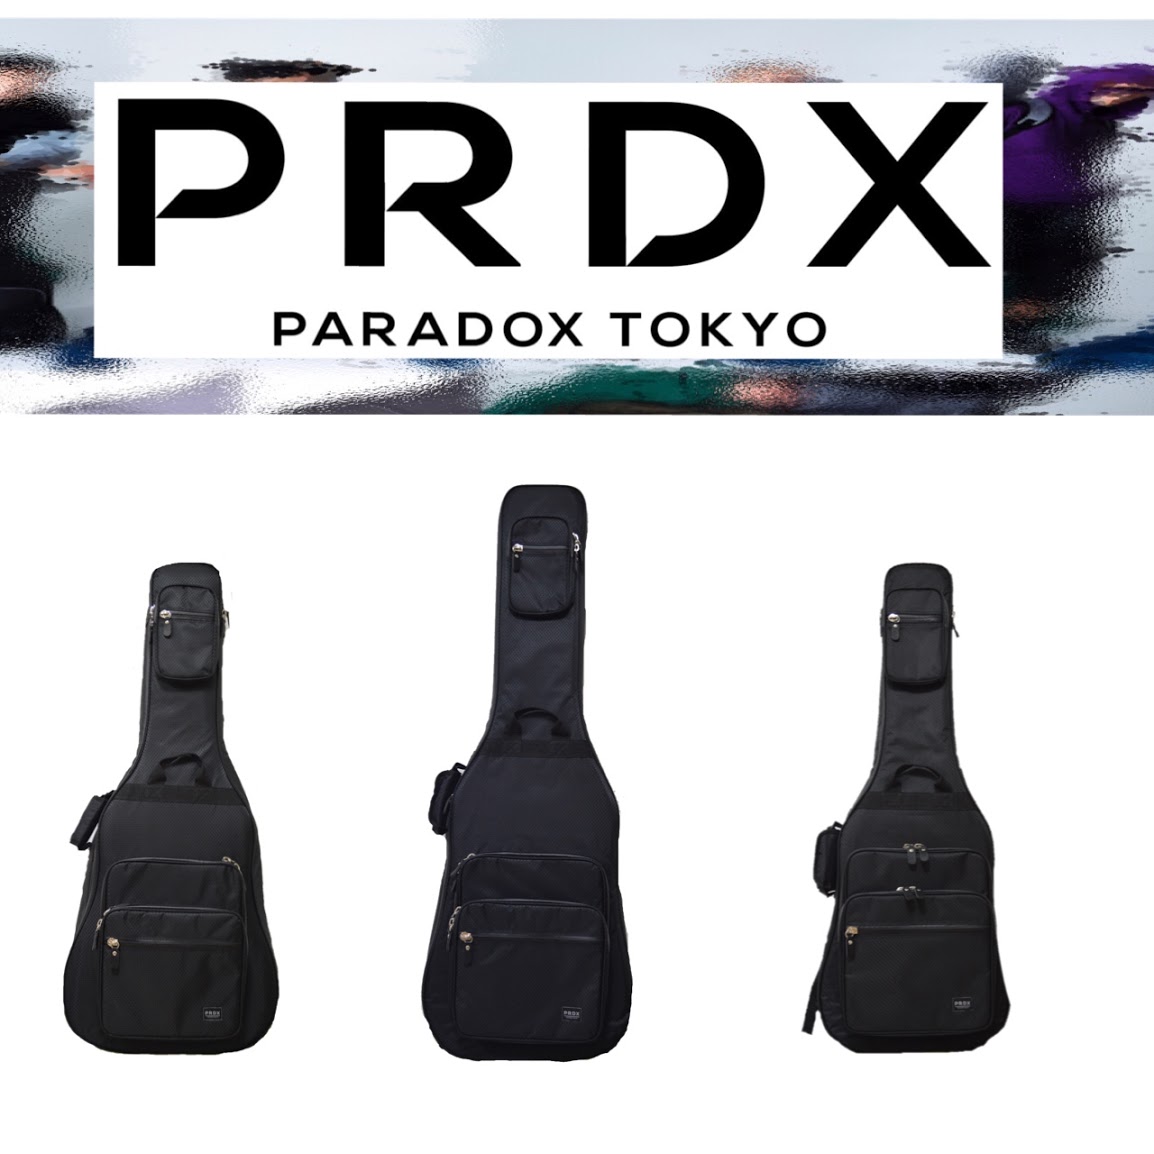 *『PARADOX　TOKYO』とは… 世の中の矛盾から生まれるエネルギーを軸に、新たなクリエーションの可能性を追求し続ける実験的なウェアライン。FASHIONという枠組を超え、MUSIC・ART等の様々なカルチャーと結びつきながら新たな形を表現していくユニセックスブランド。また、芸能界・バンドアー […]